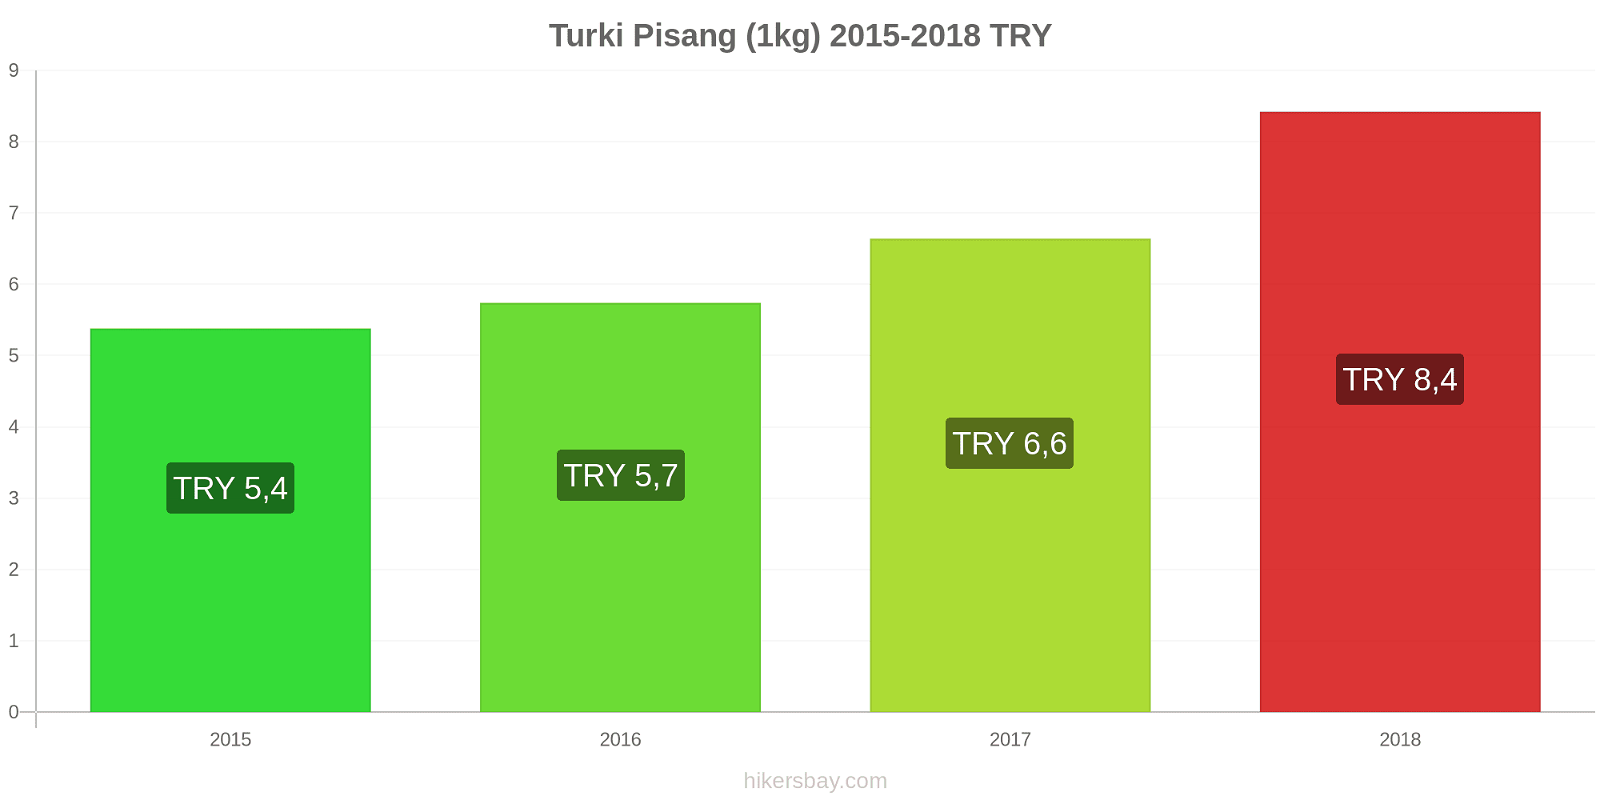 Turki perubahan harga Pisang (1kg) hikersbay.com